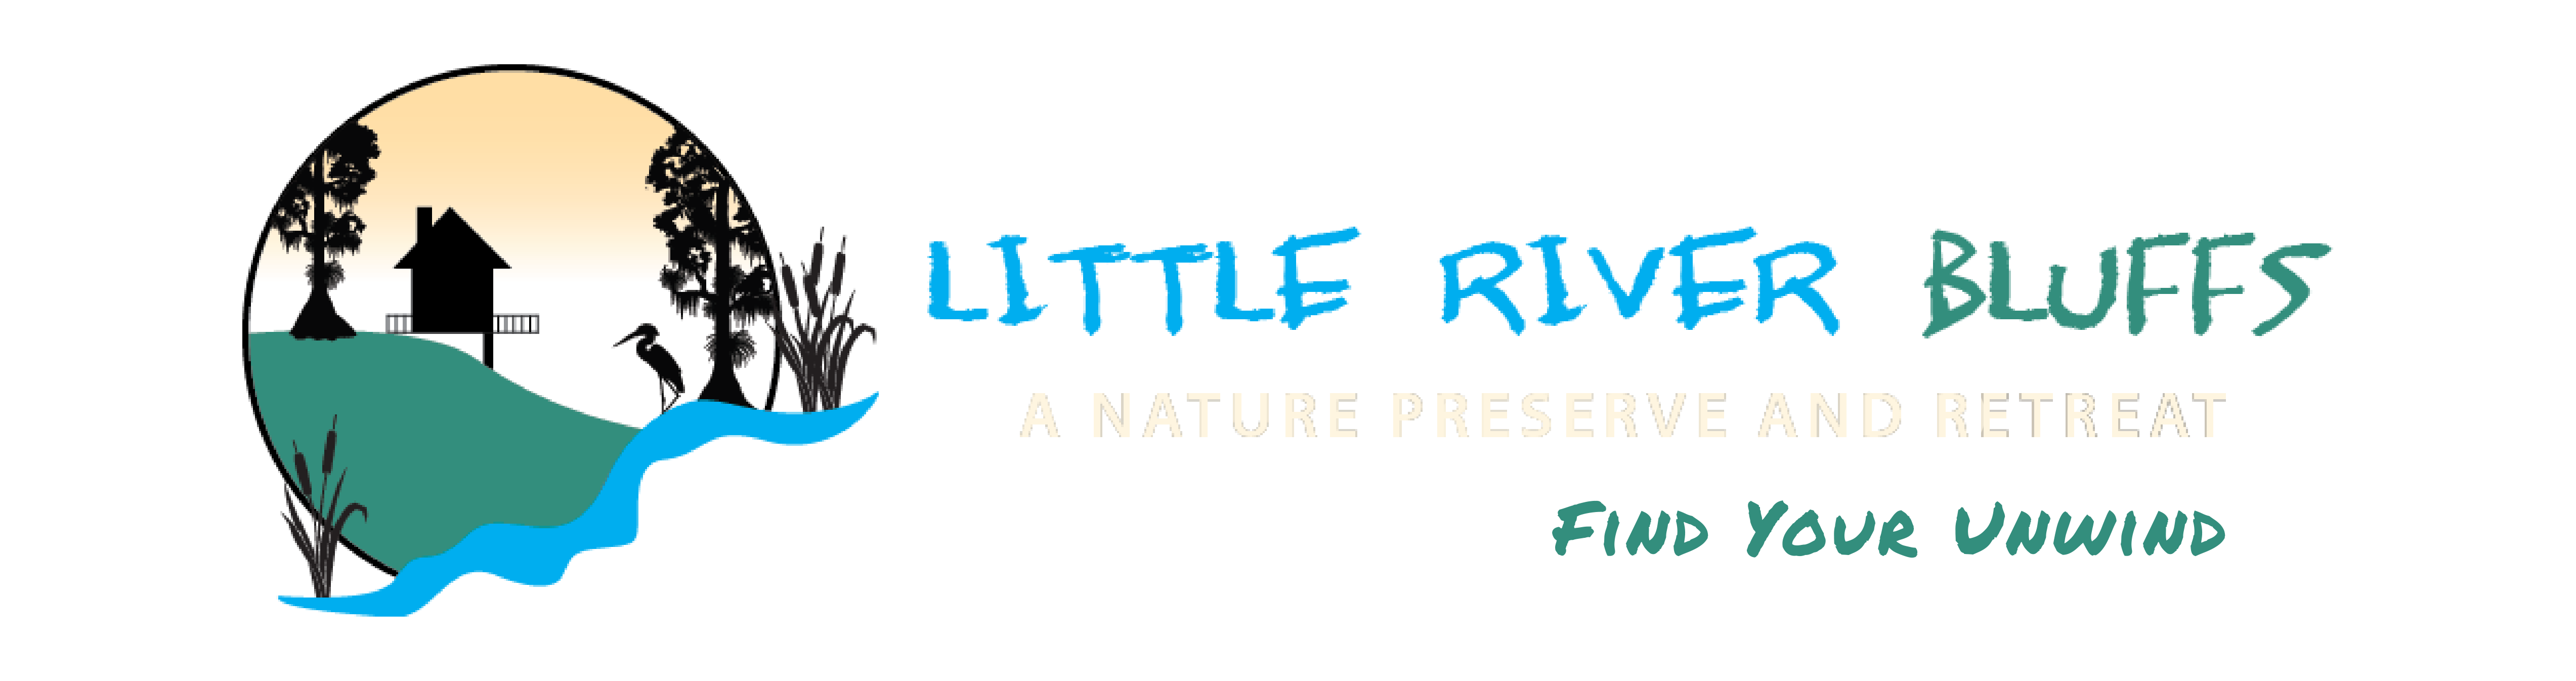 Little River Bluffs